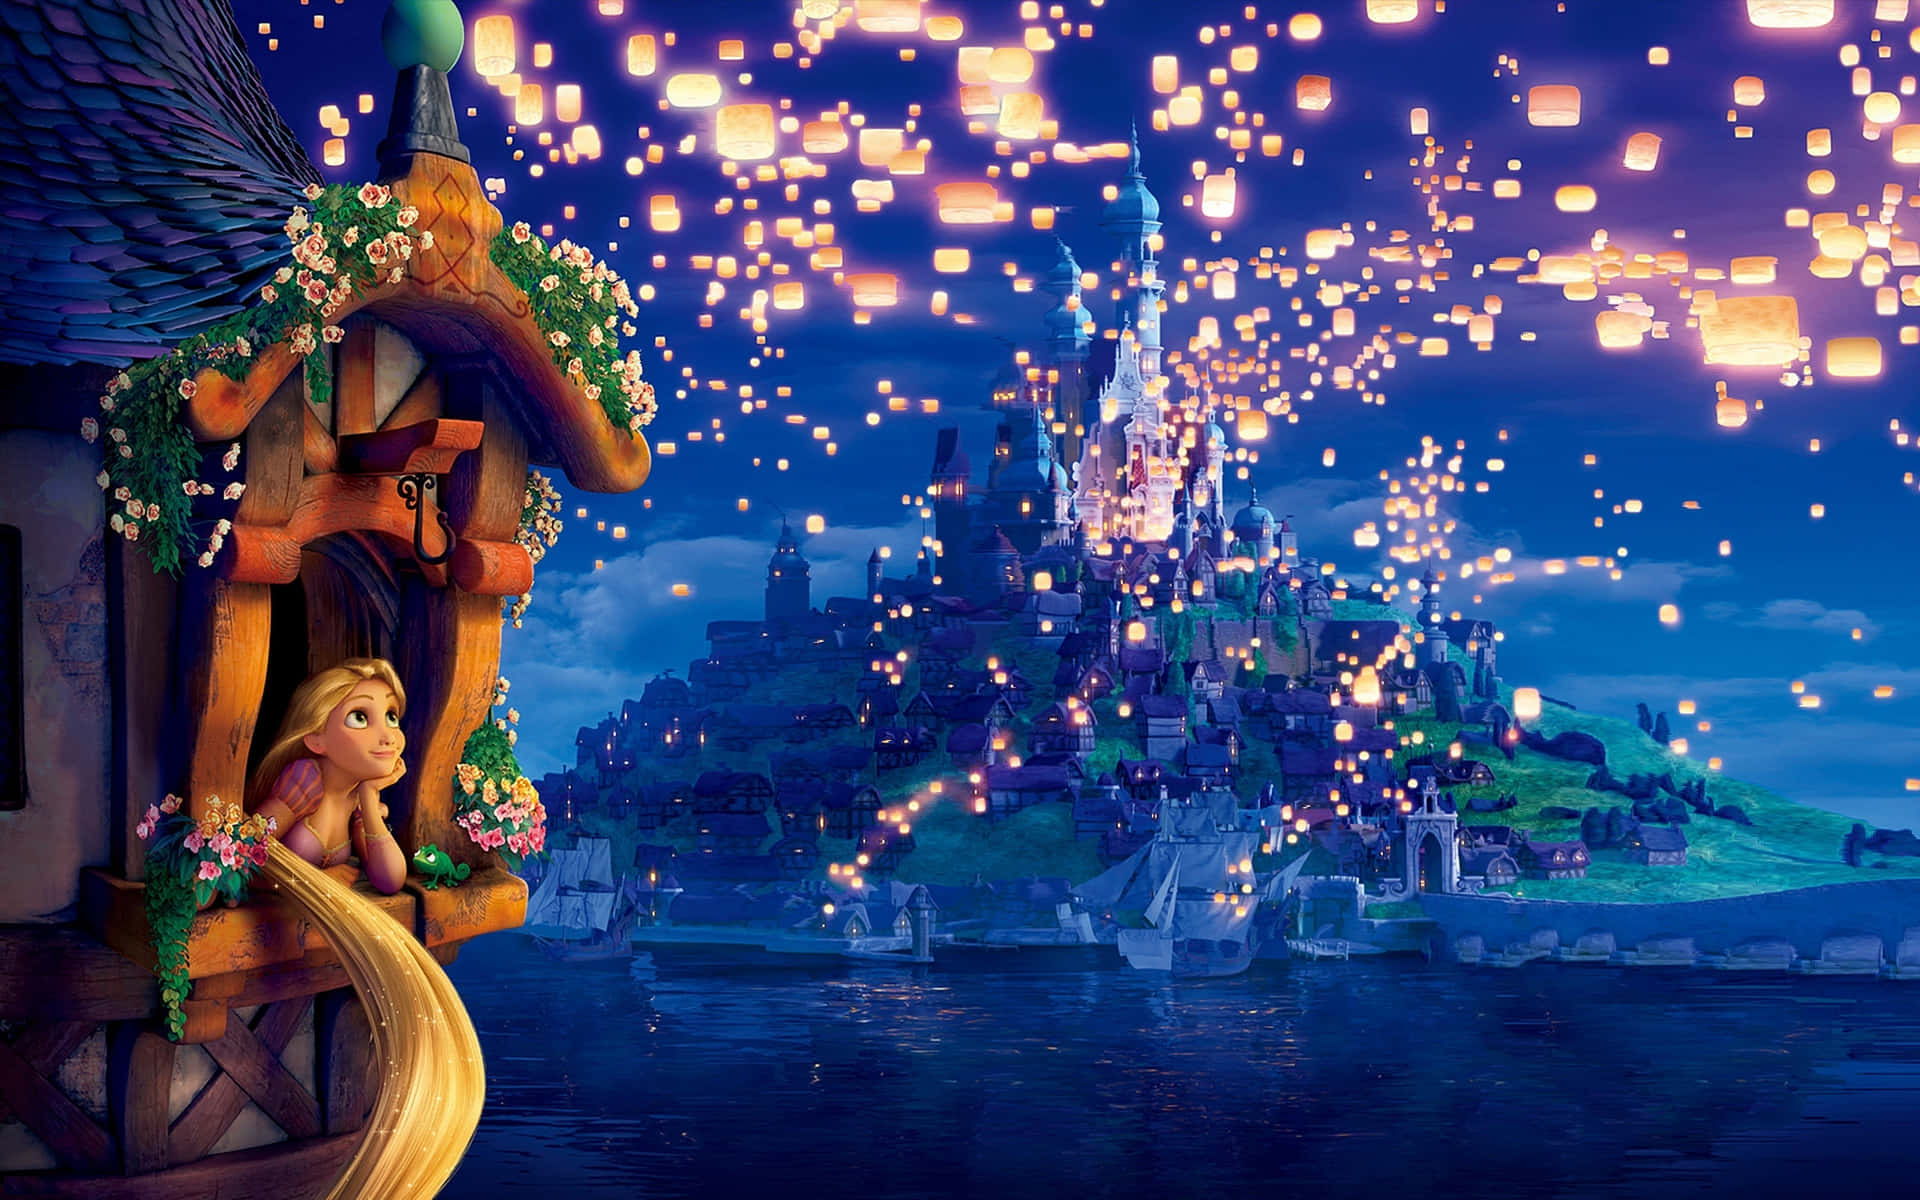 Rapunzelsfoggiava I Suoi Iconici Capelli Dorati Nel Film Disney, Rapunzel - L'intreccio Della Torre.